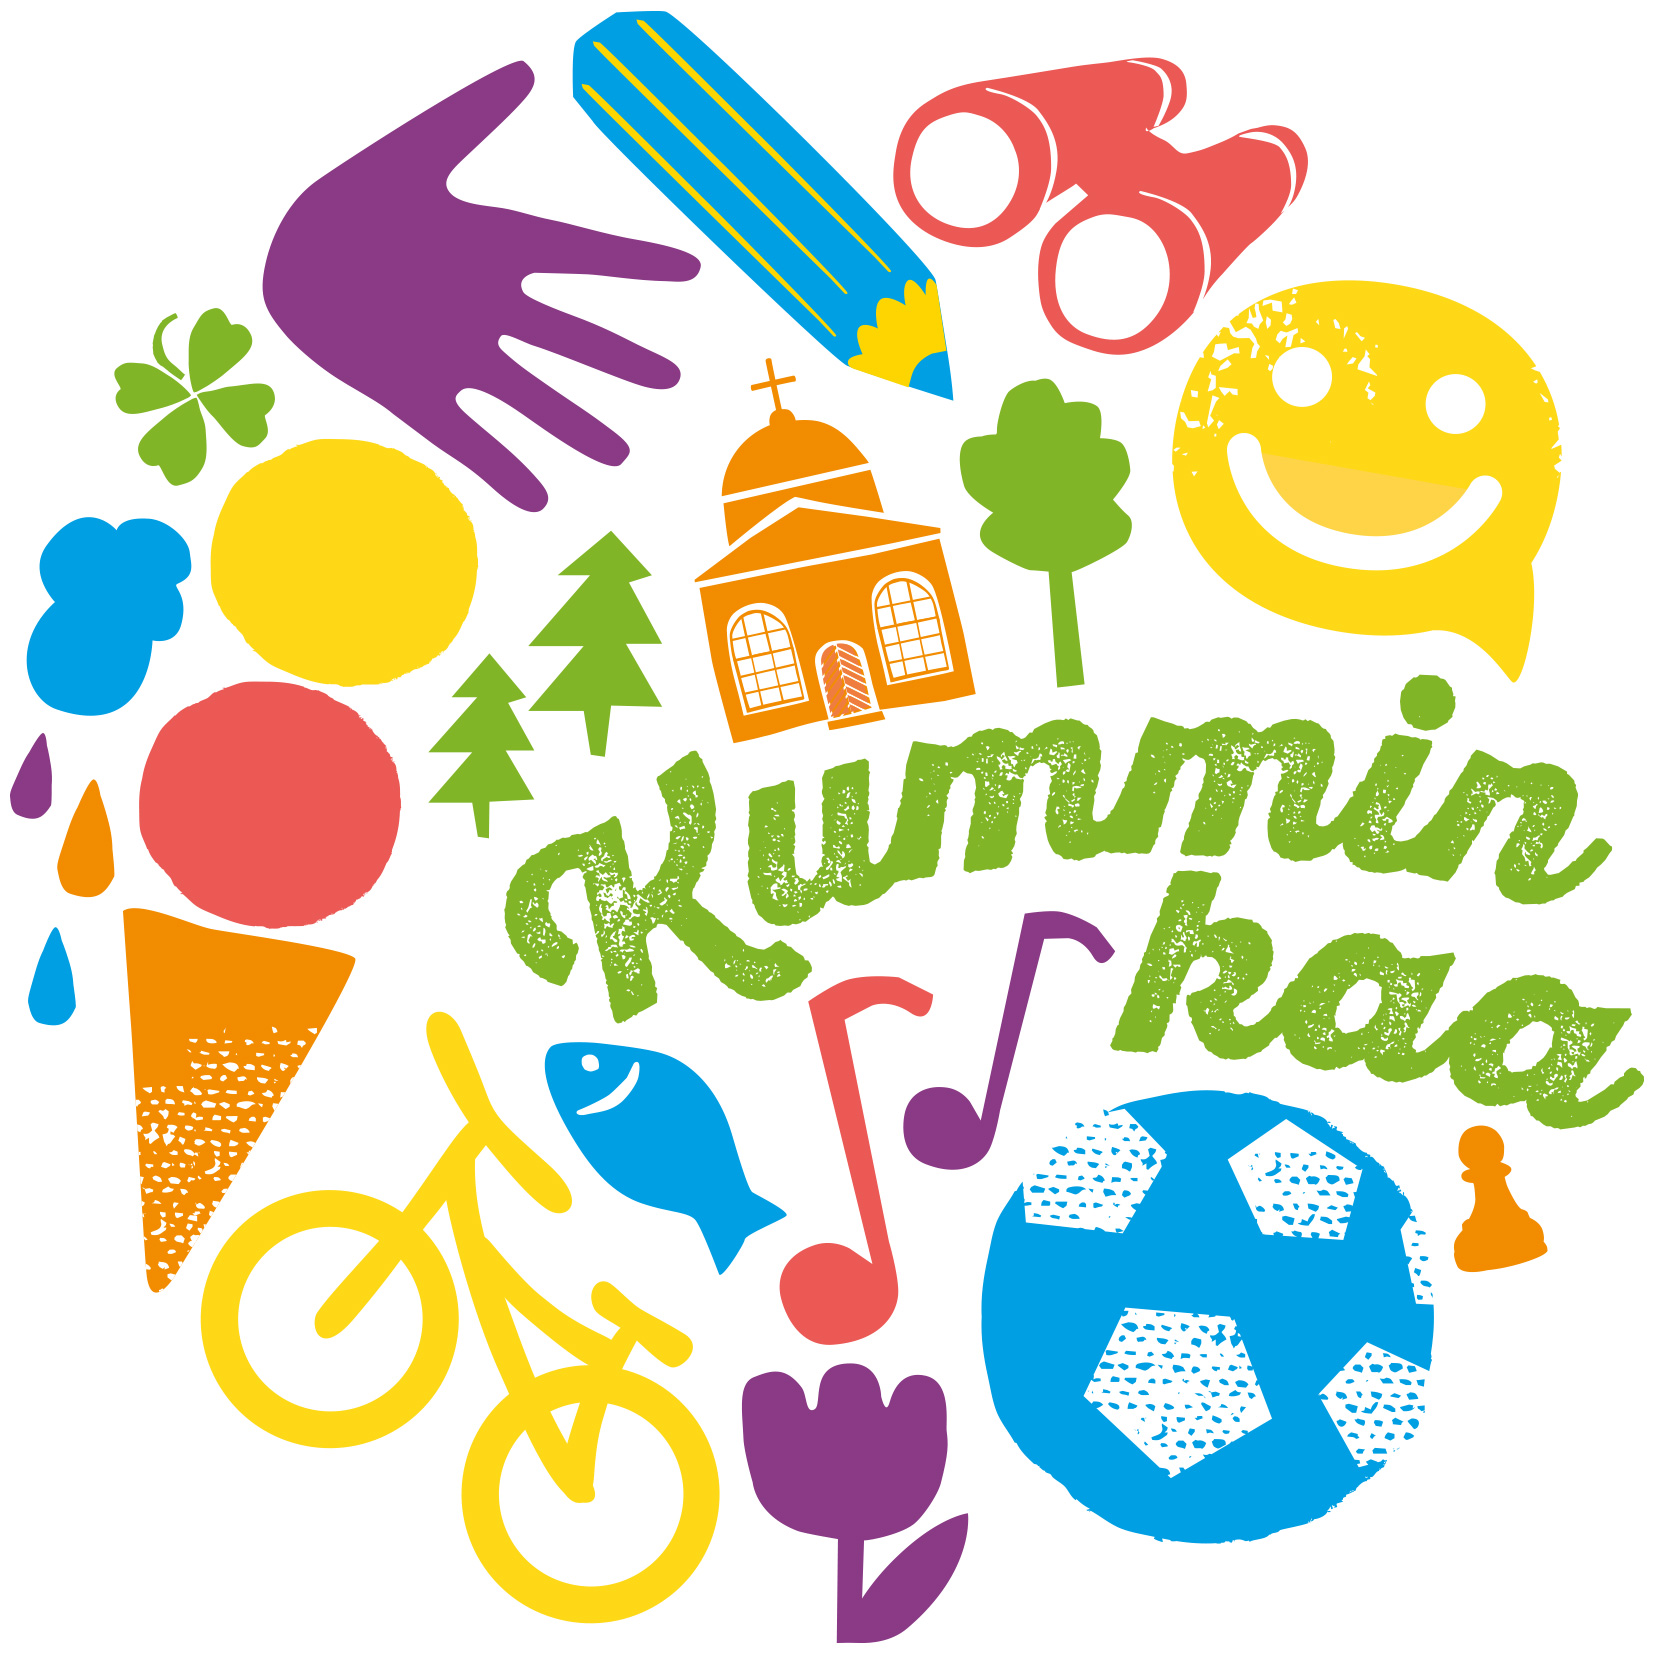 Kummipäivän logo, jossa piirrettyjä värikkäitä kuvia: jalkapallo, jäätelötötterö, polkupyörä, kirkko, kiika...